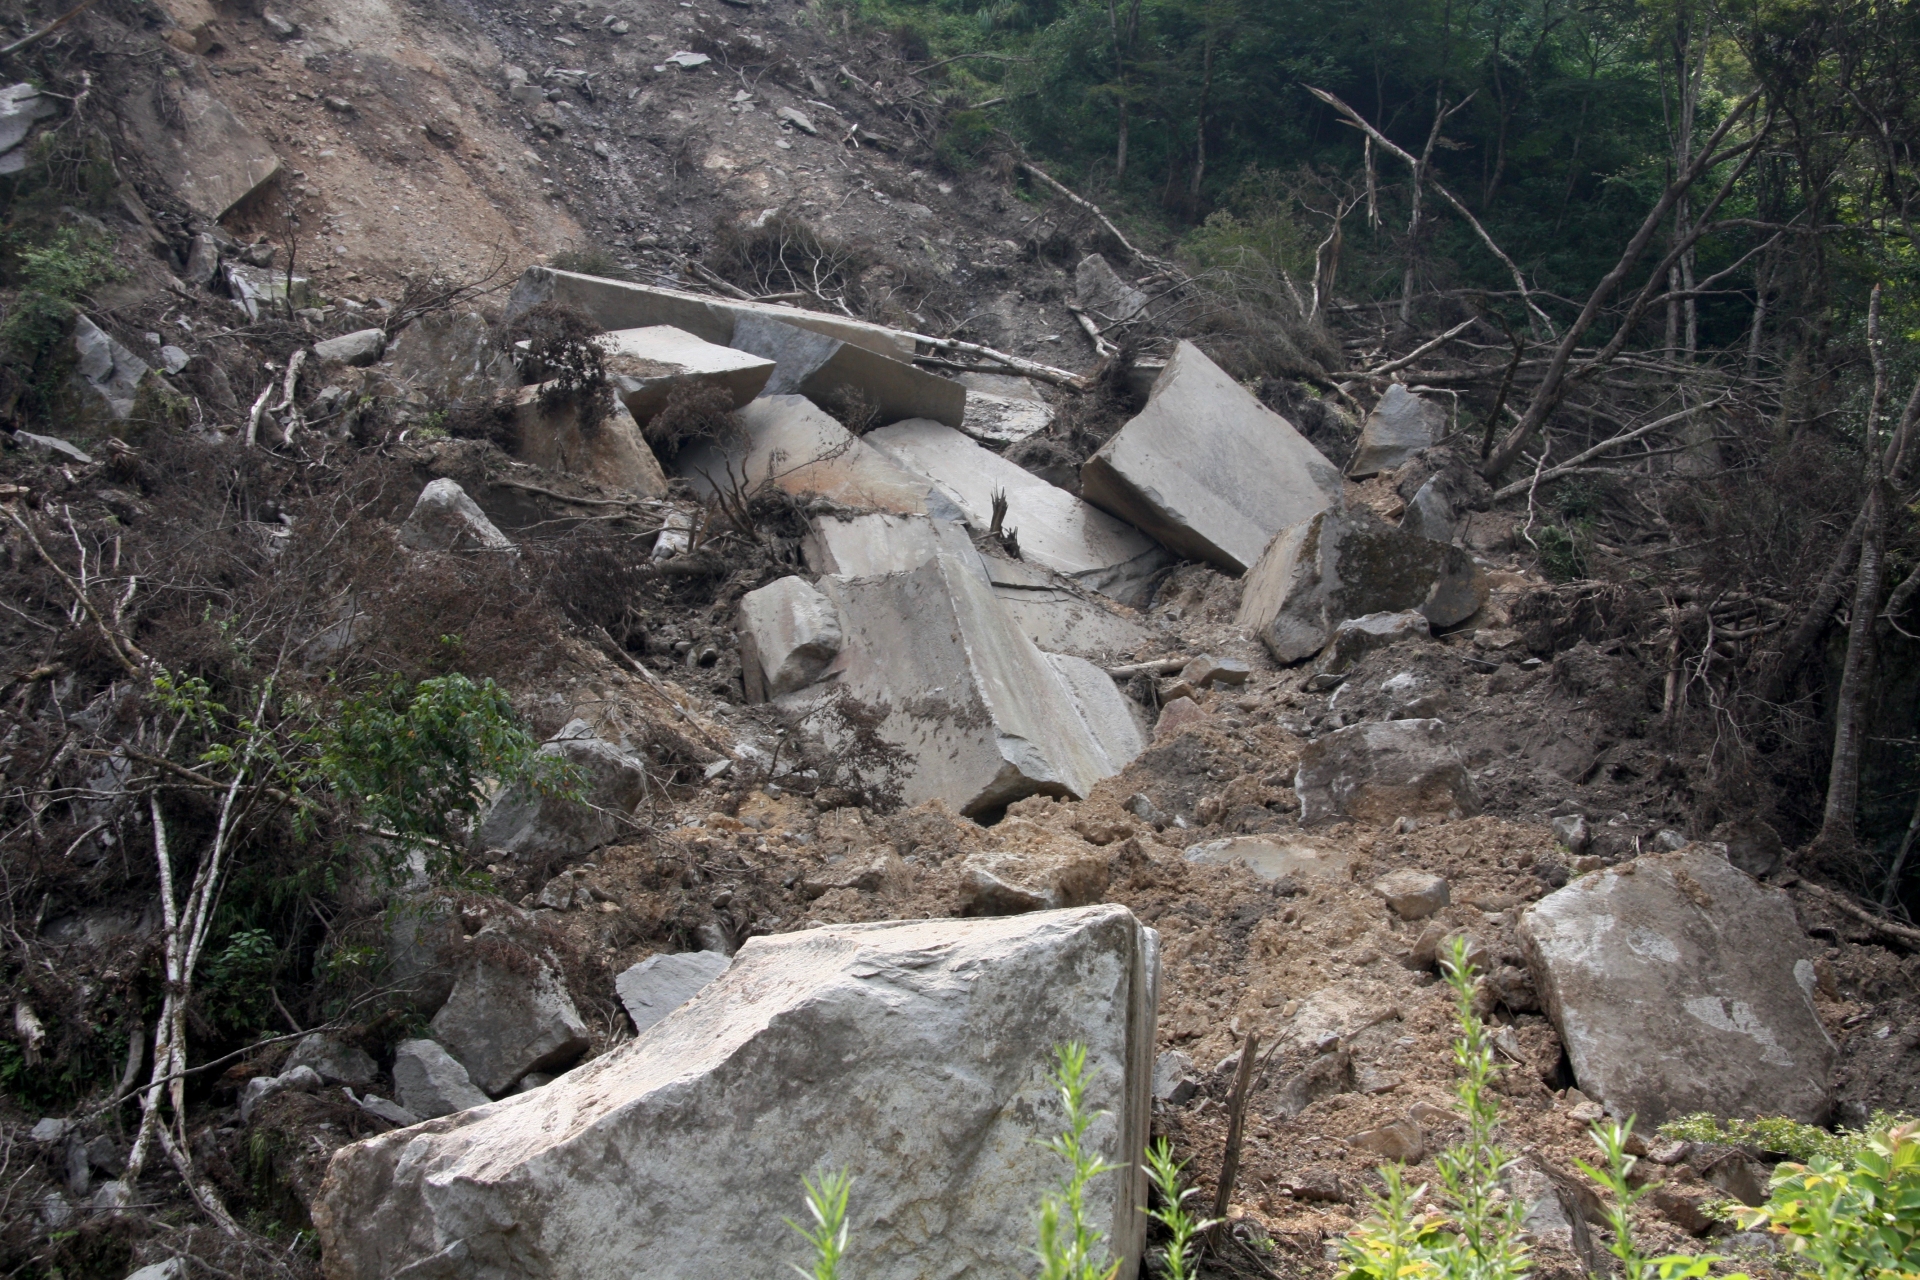 zushi-city-launch-detect-sign-of-landslide